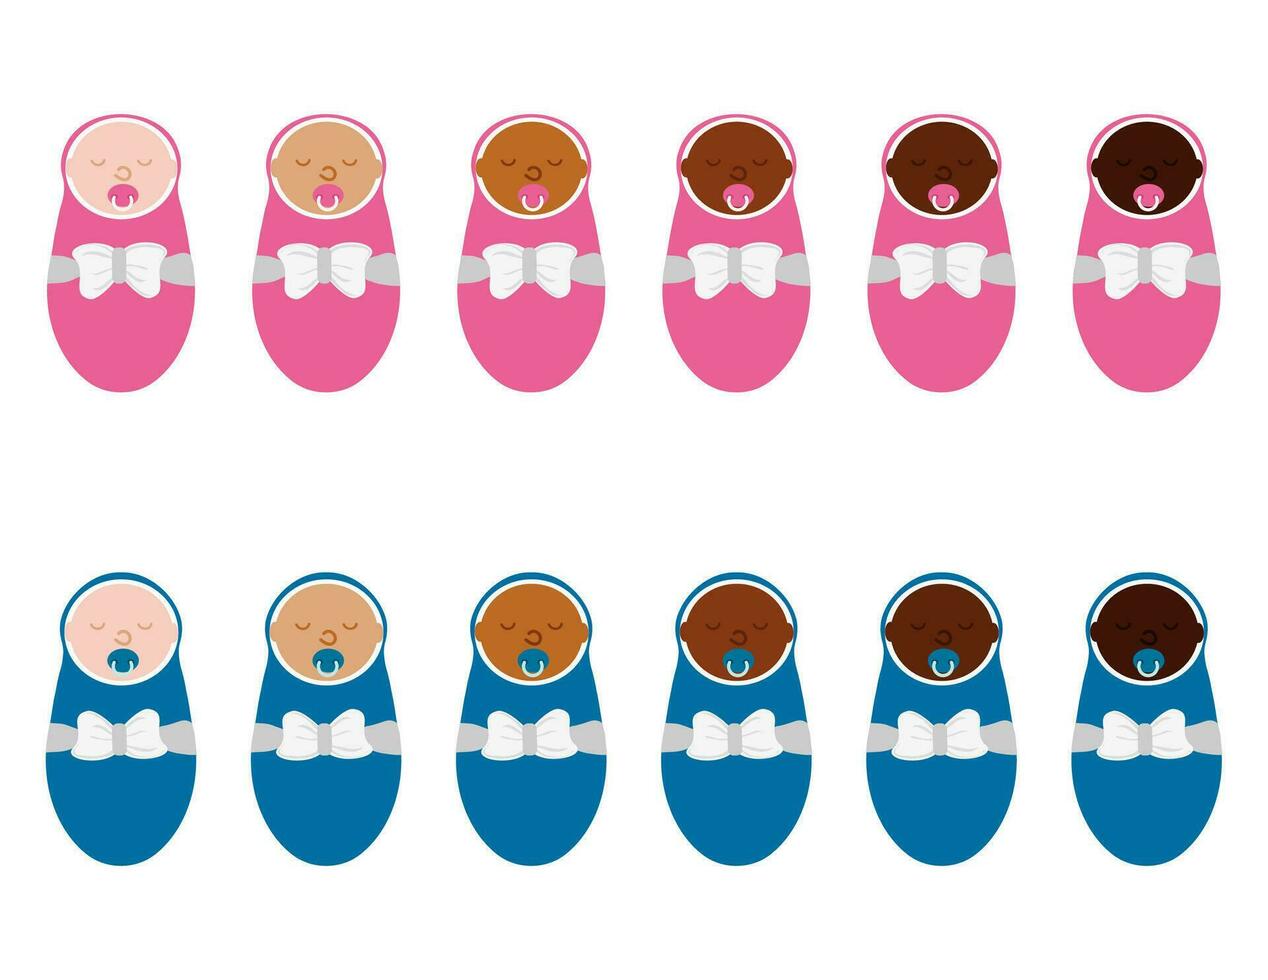 meisjes en jongens baby's met verschillend huid kleur. jong kinderen of pasgeborenen ras diversiteit. multinational vector illustratie.